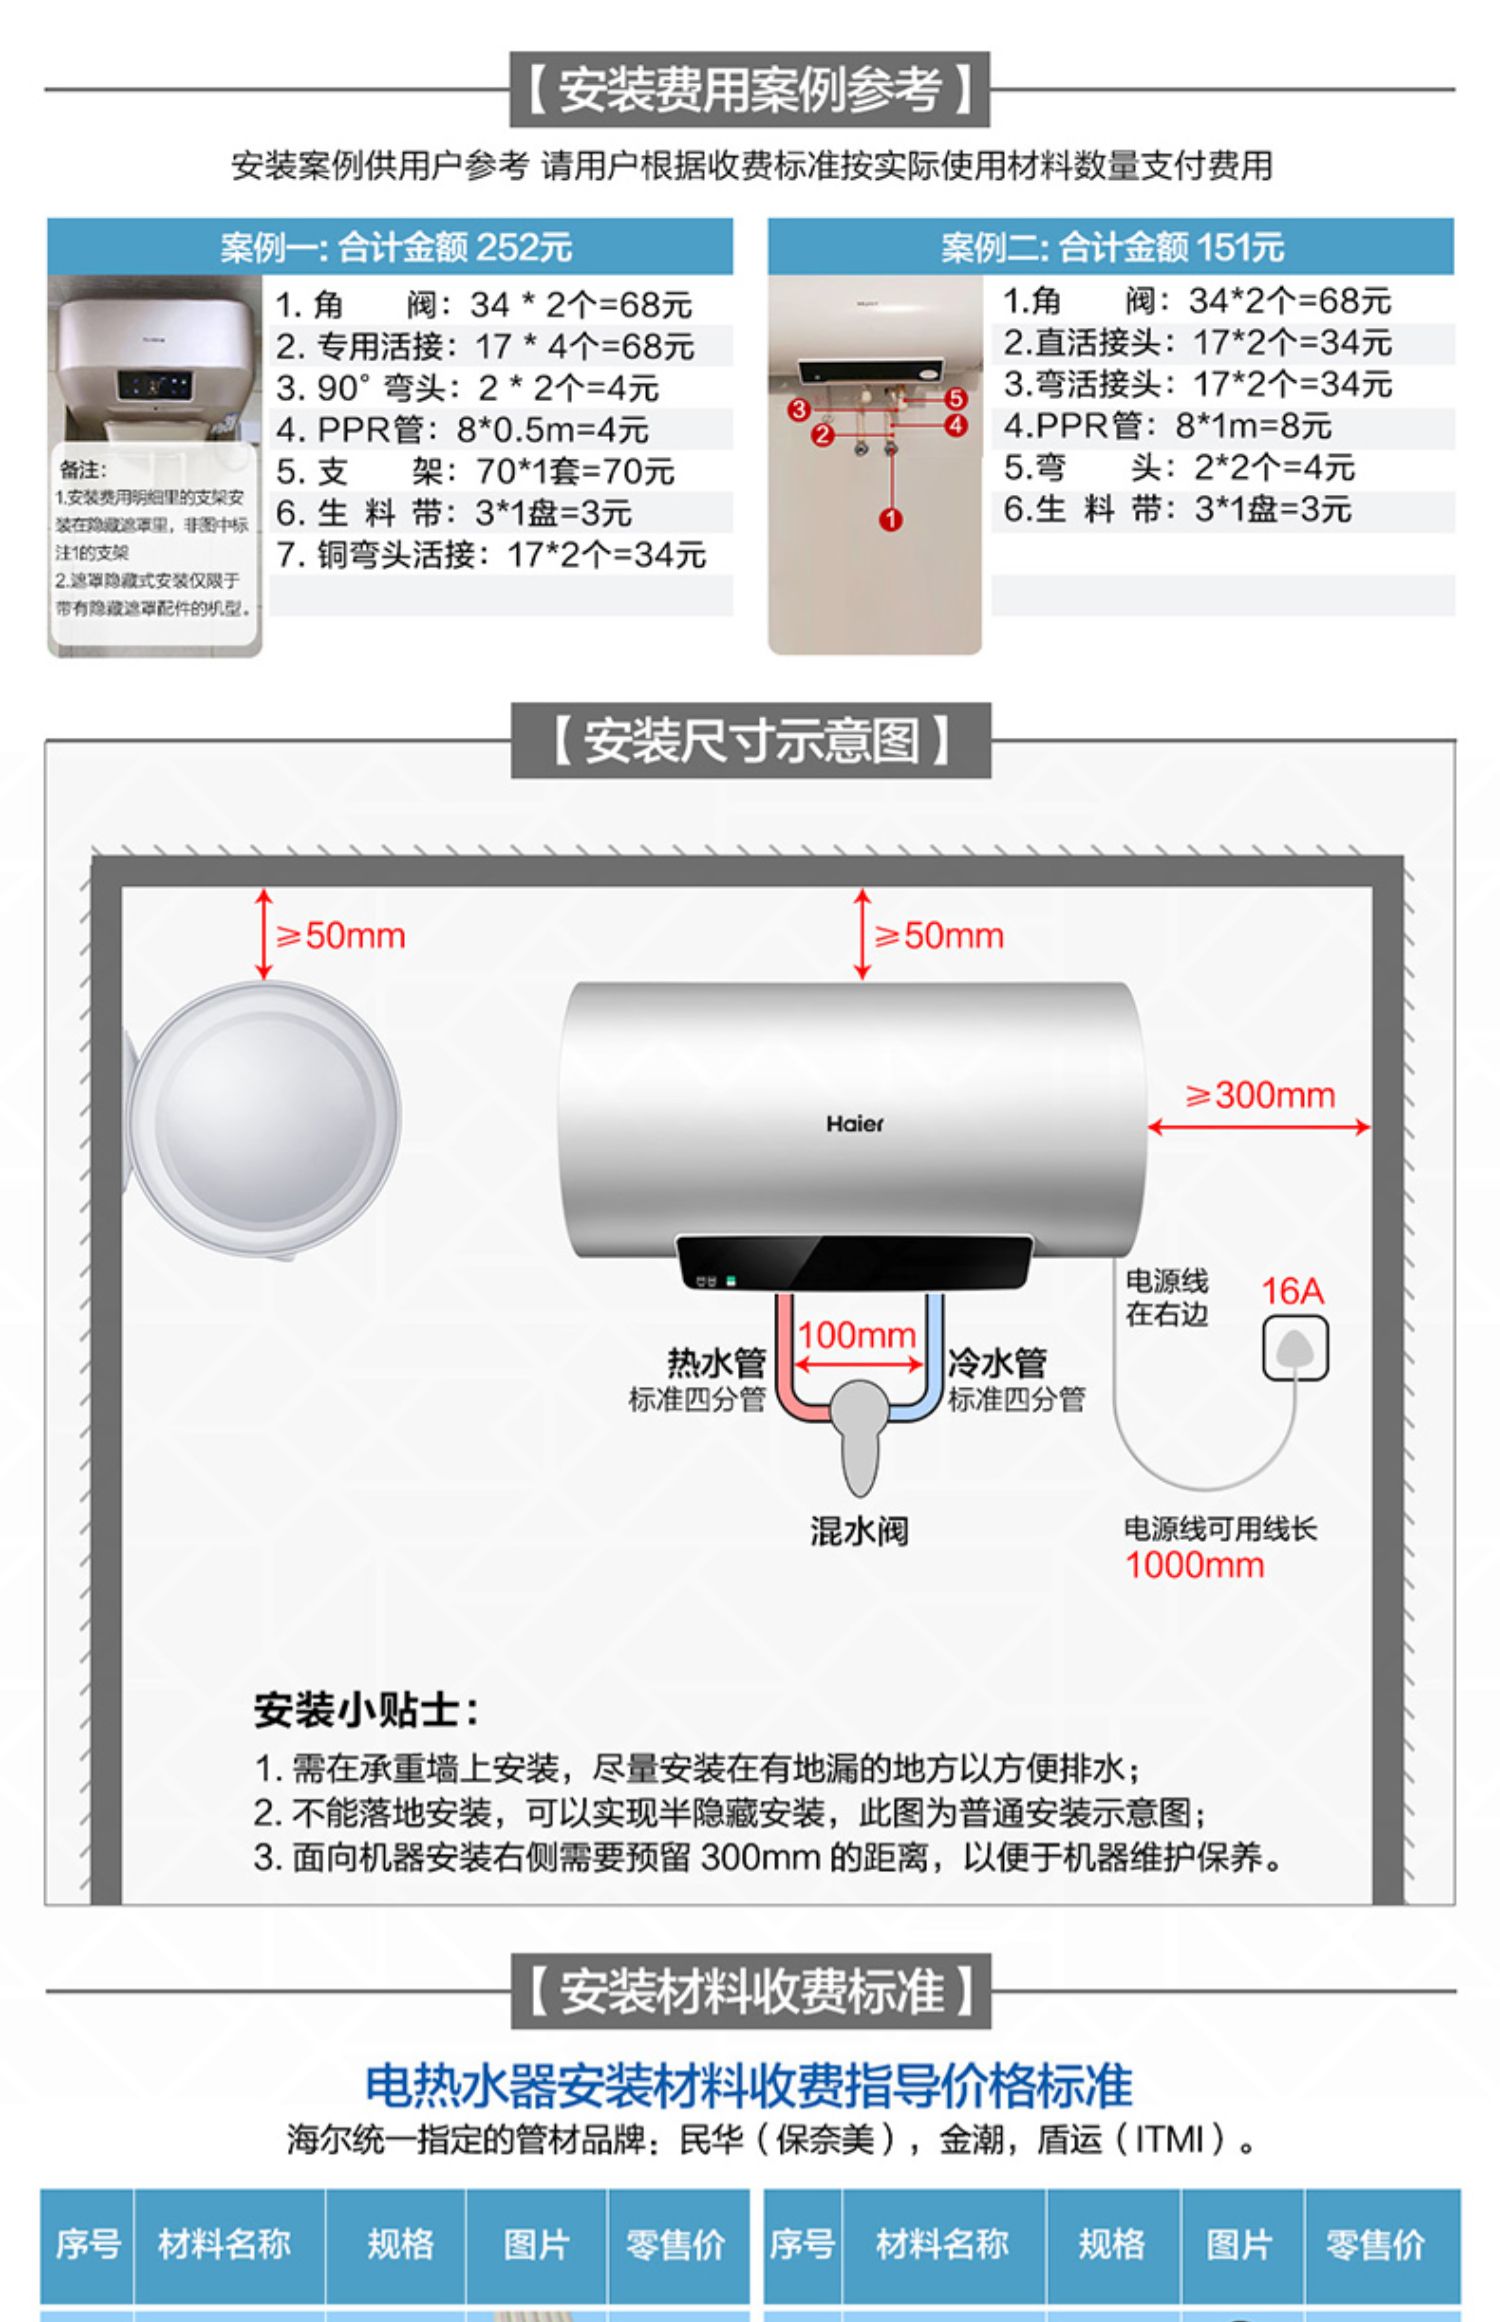 海尔电热水器图解说明图片